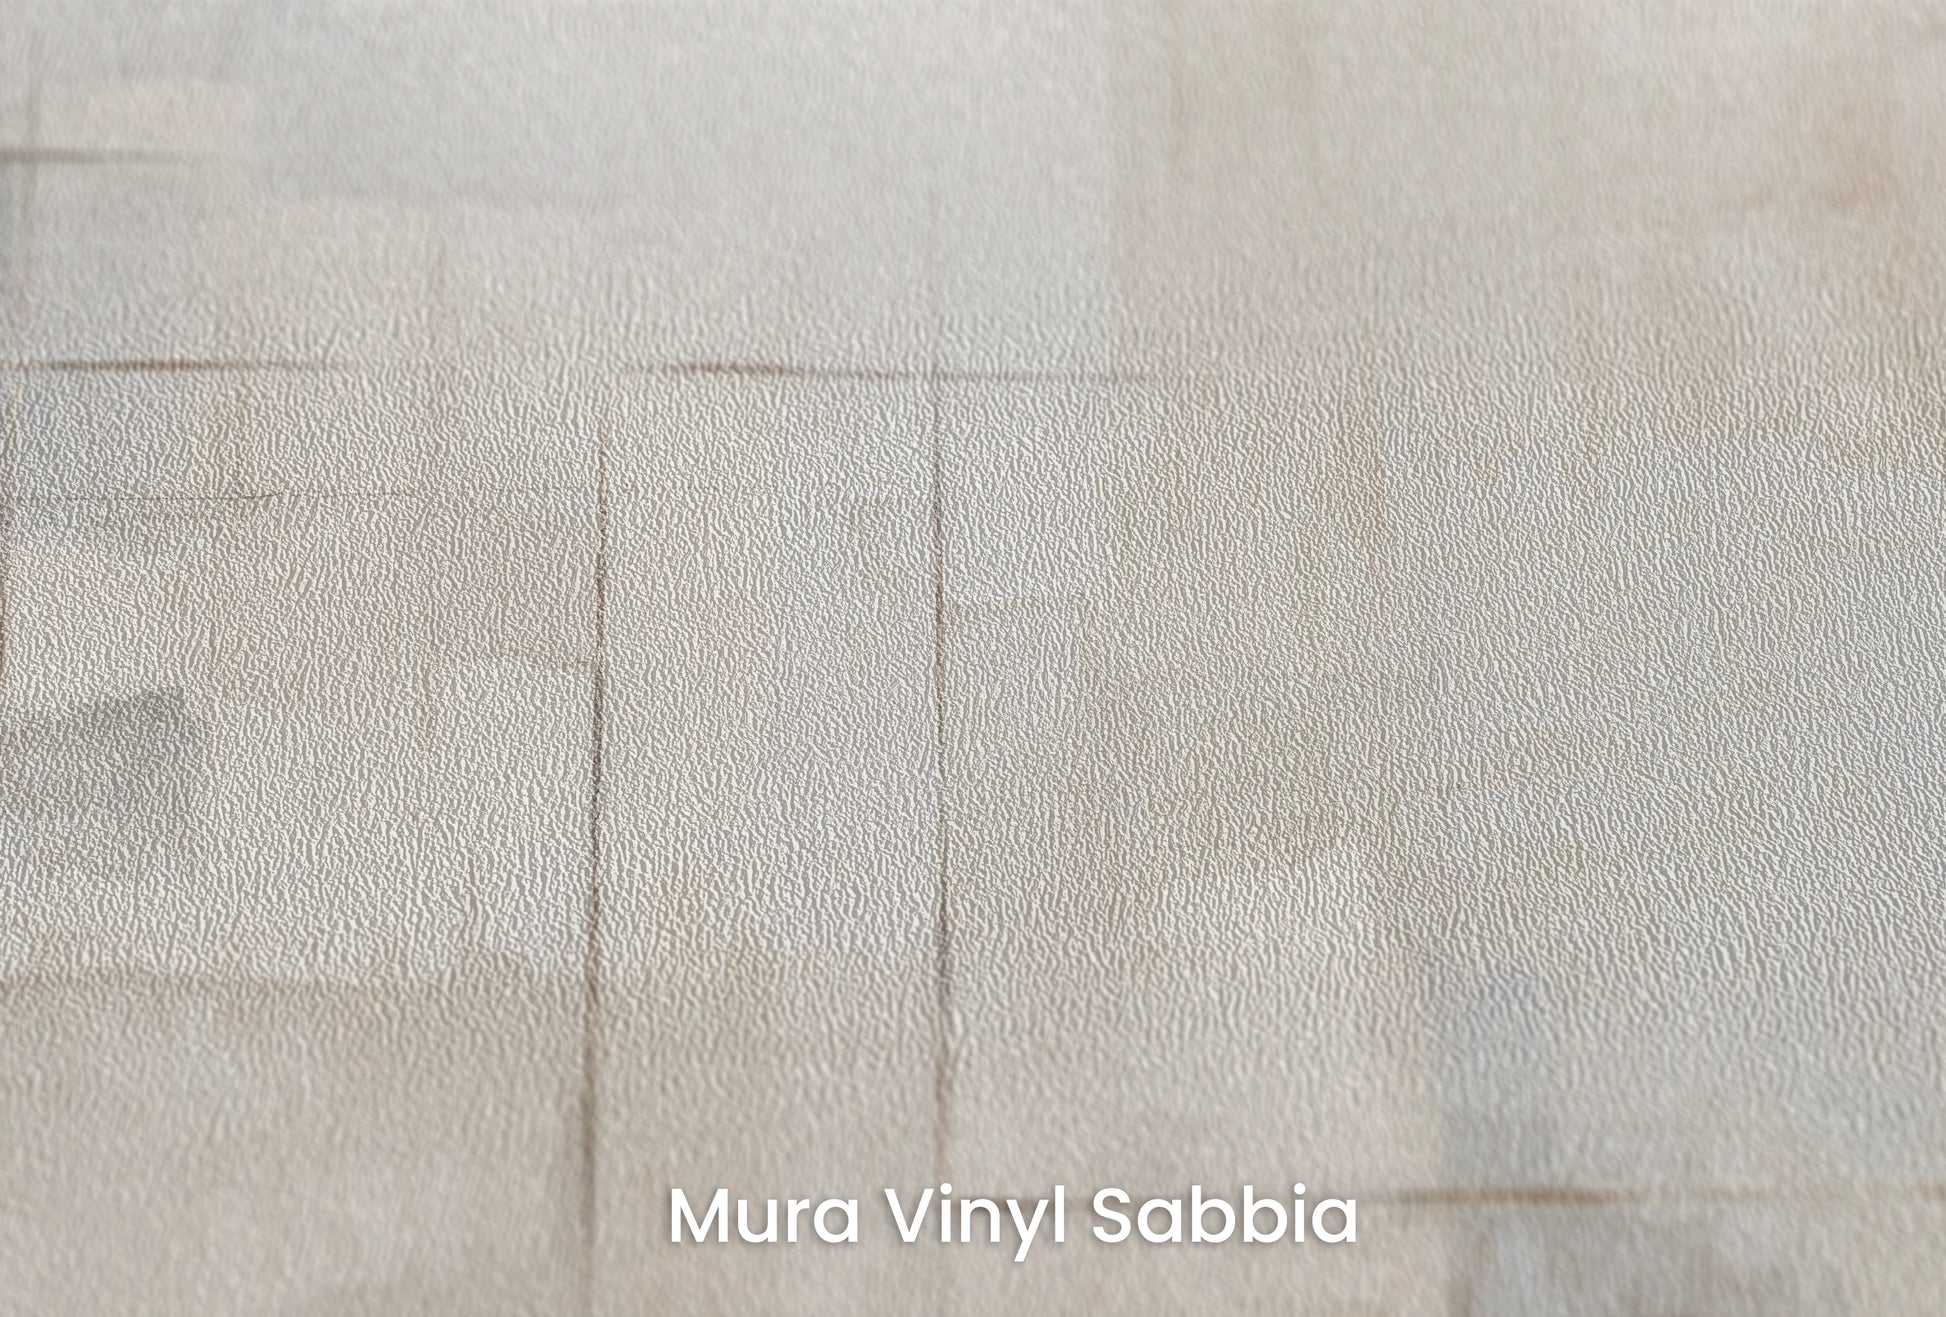 Zbliżenie na artystyczną fototapetę o nazwie Crisp Edges na podłożu Mura Vinyl Sabbia struktura grubego ziarna piasku.